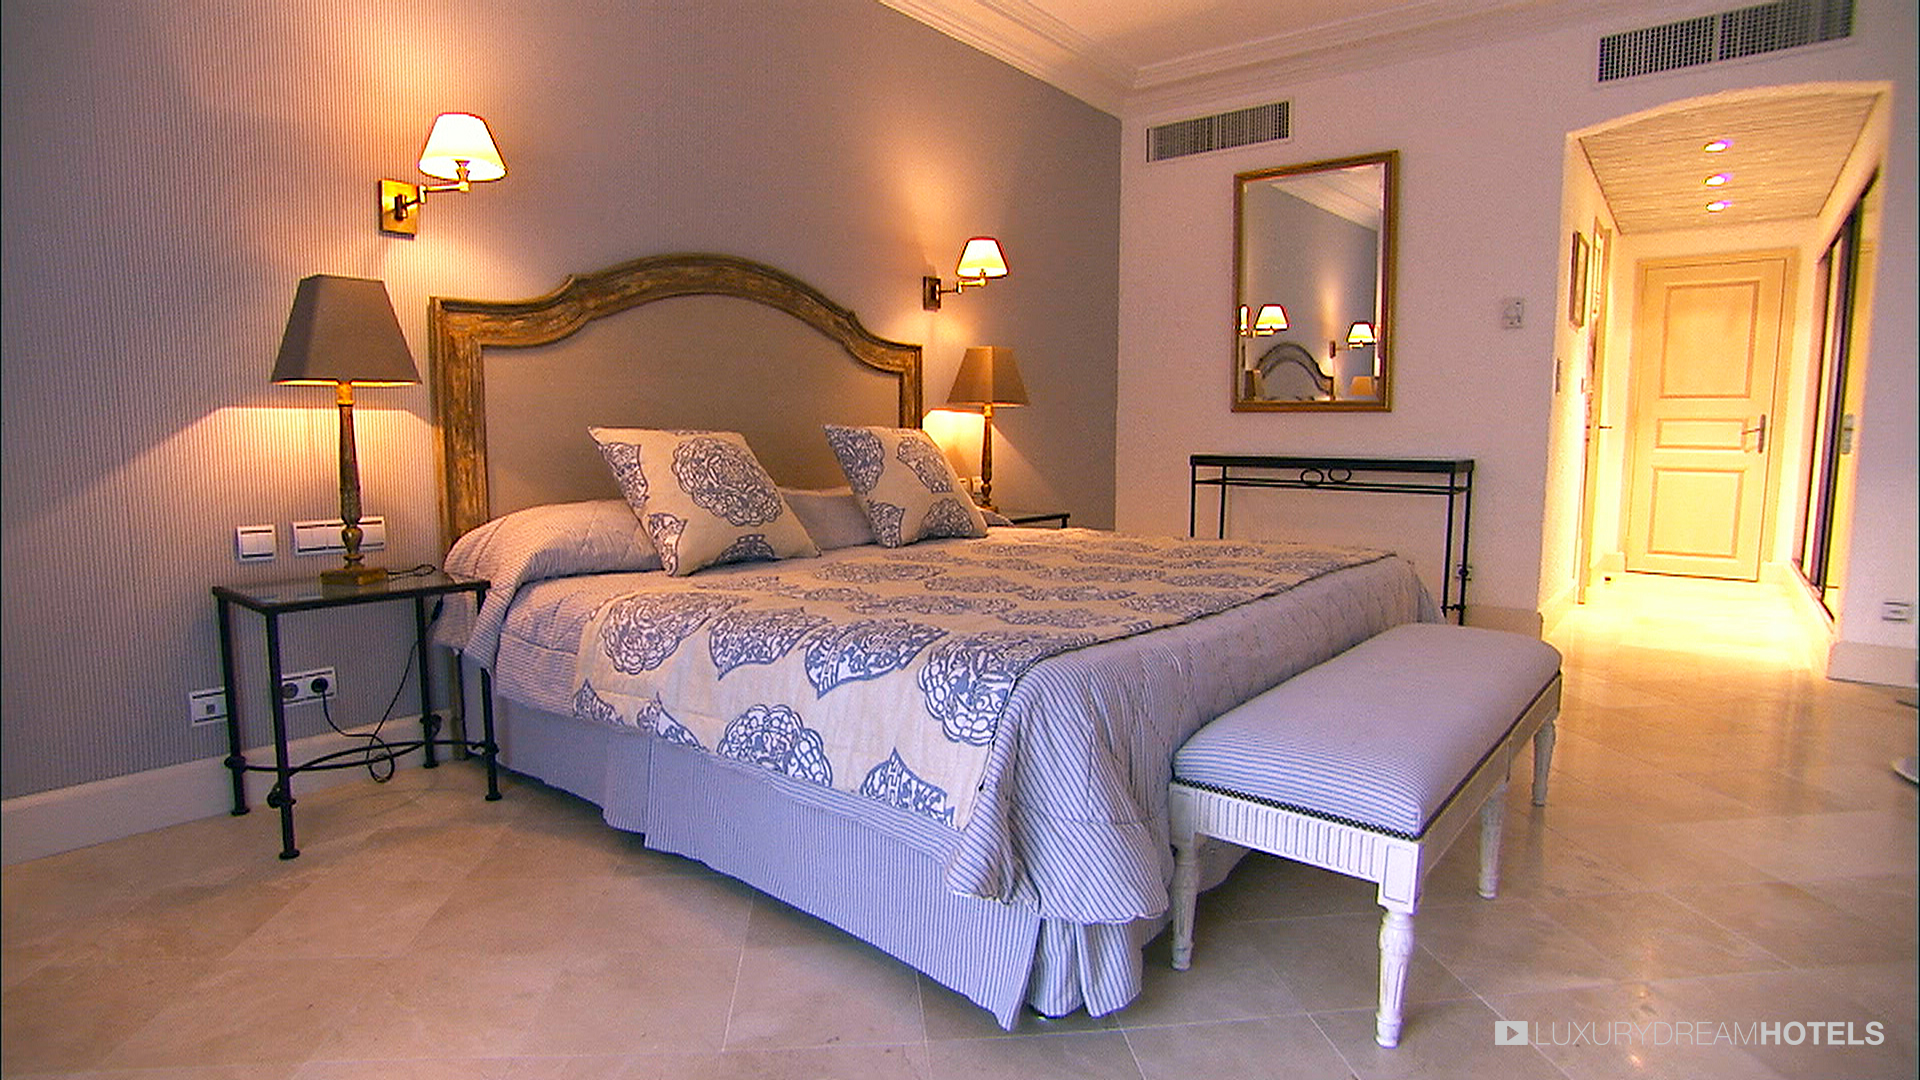 Hôtel Byblos Saint-Tropez - Palace - Hôtel 5 étoiles Luxe - un